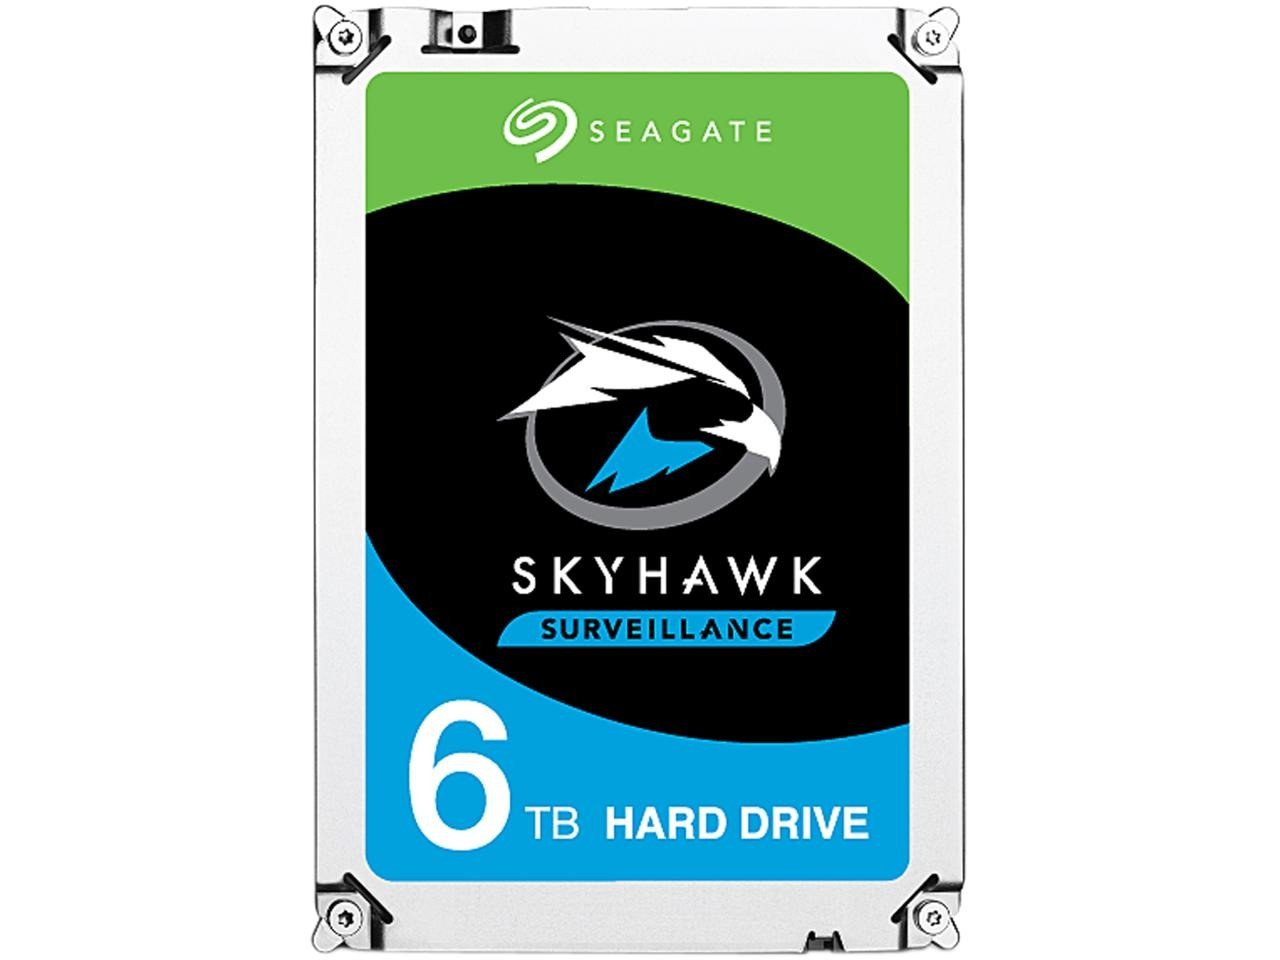 Seagate Skyhawk 6 TB Surveillance Internal Hard Drive